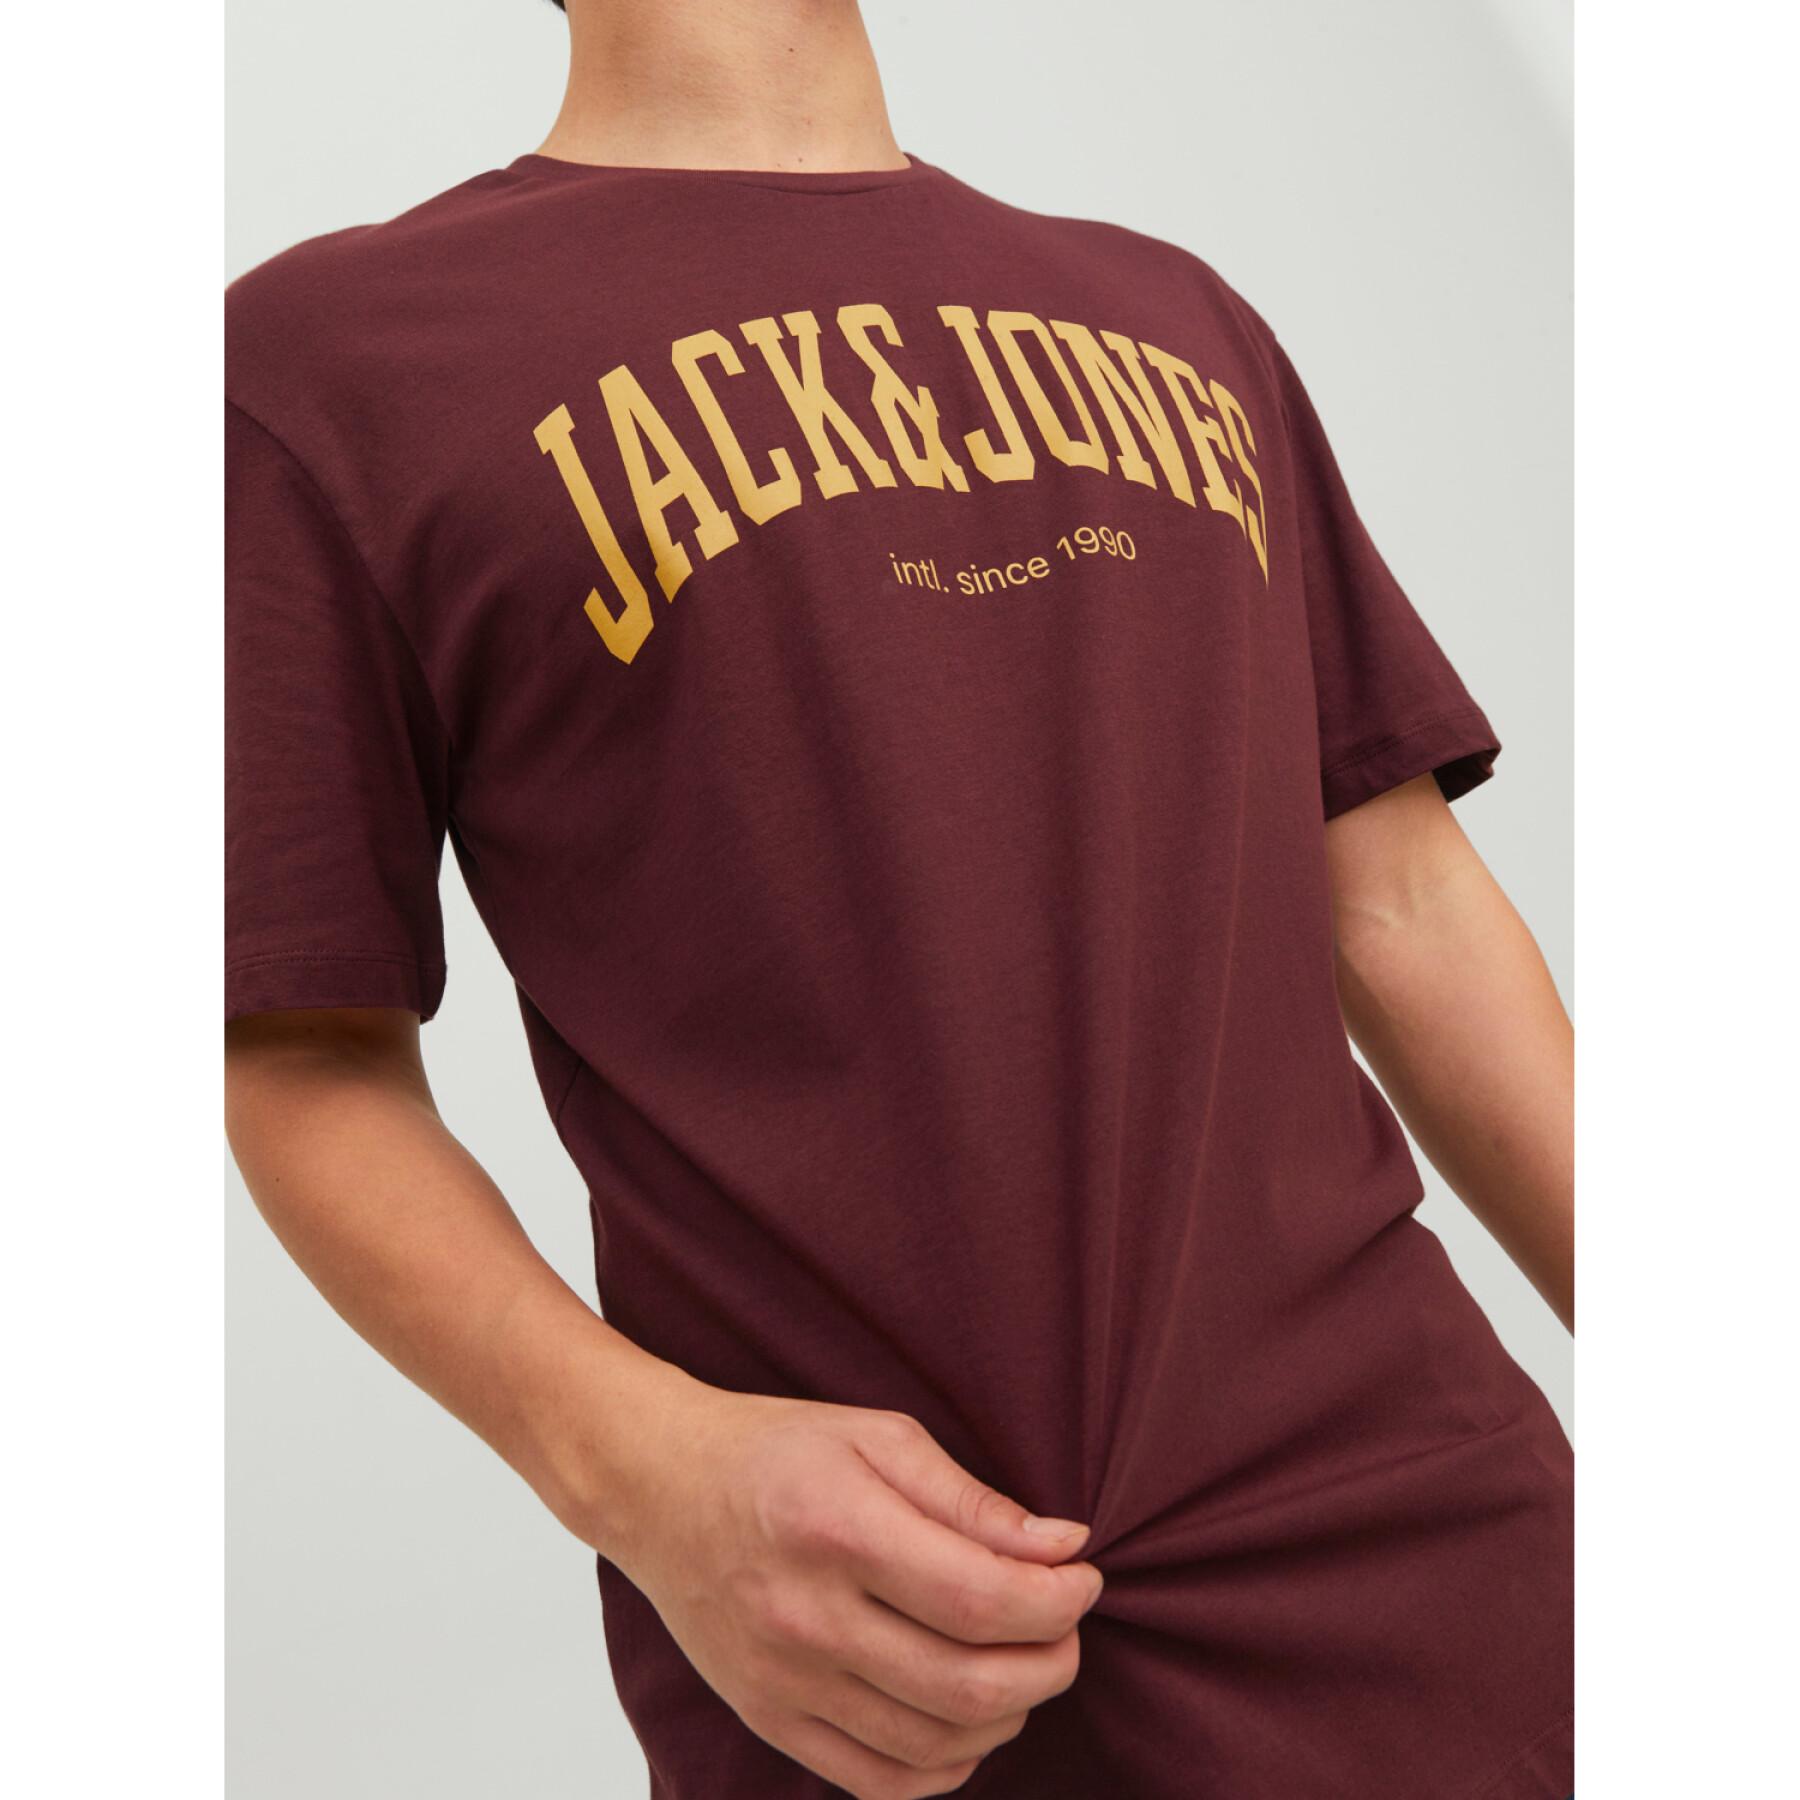 T-shirt met ronde hals Jack & Jones Josh